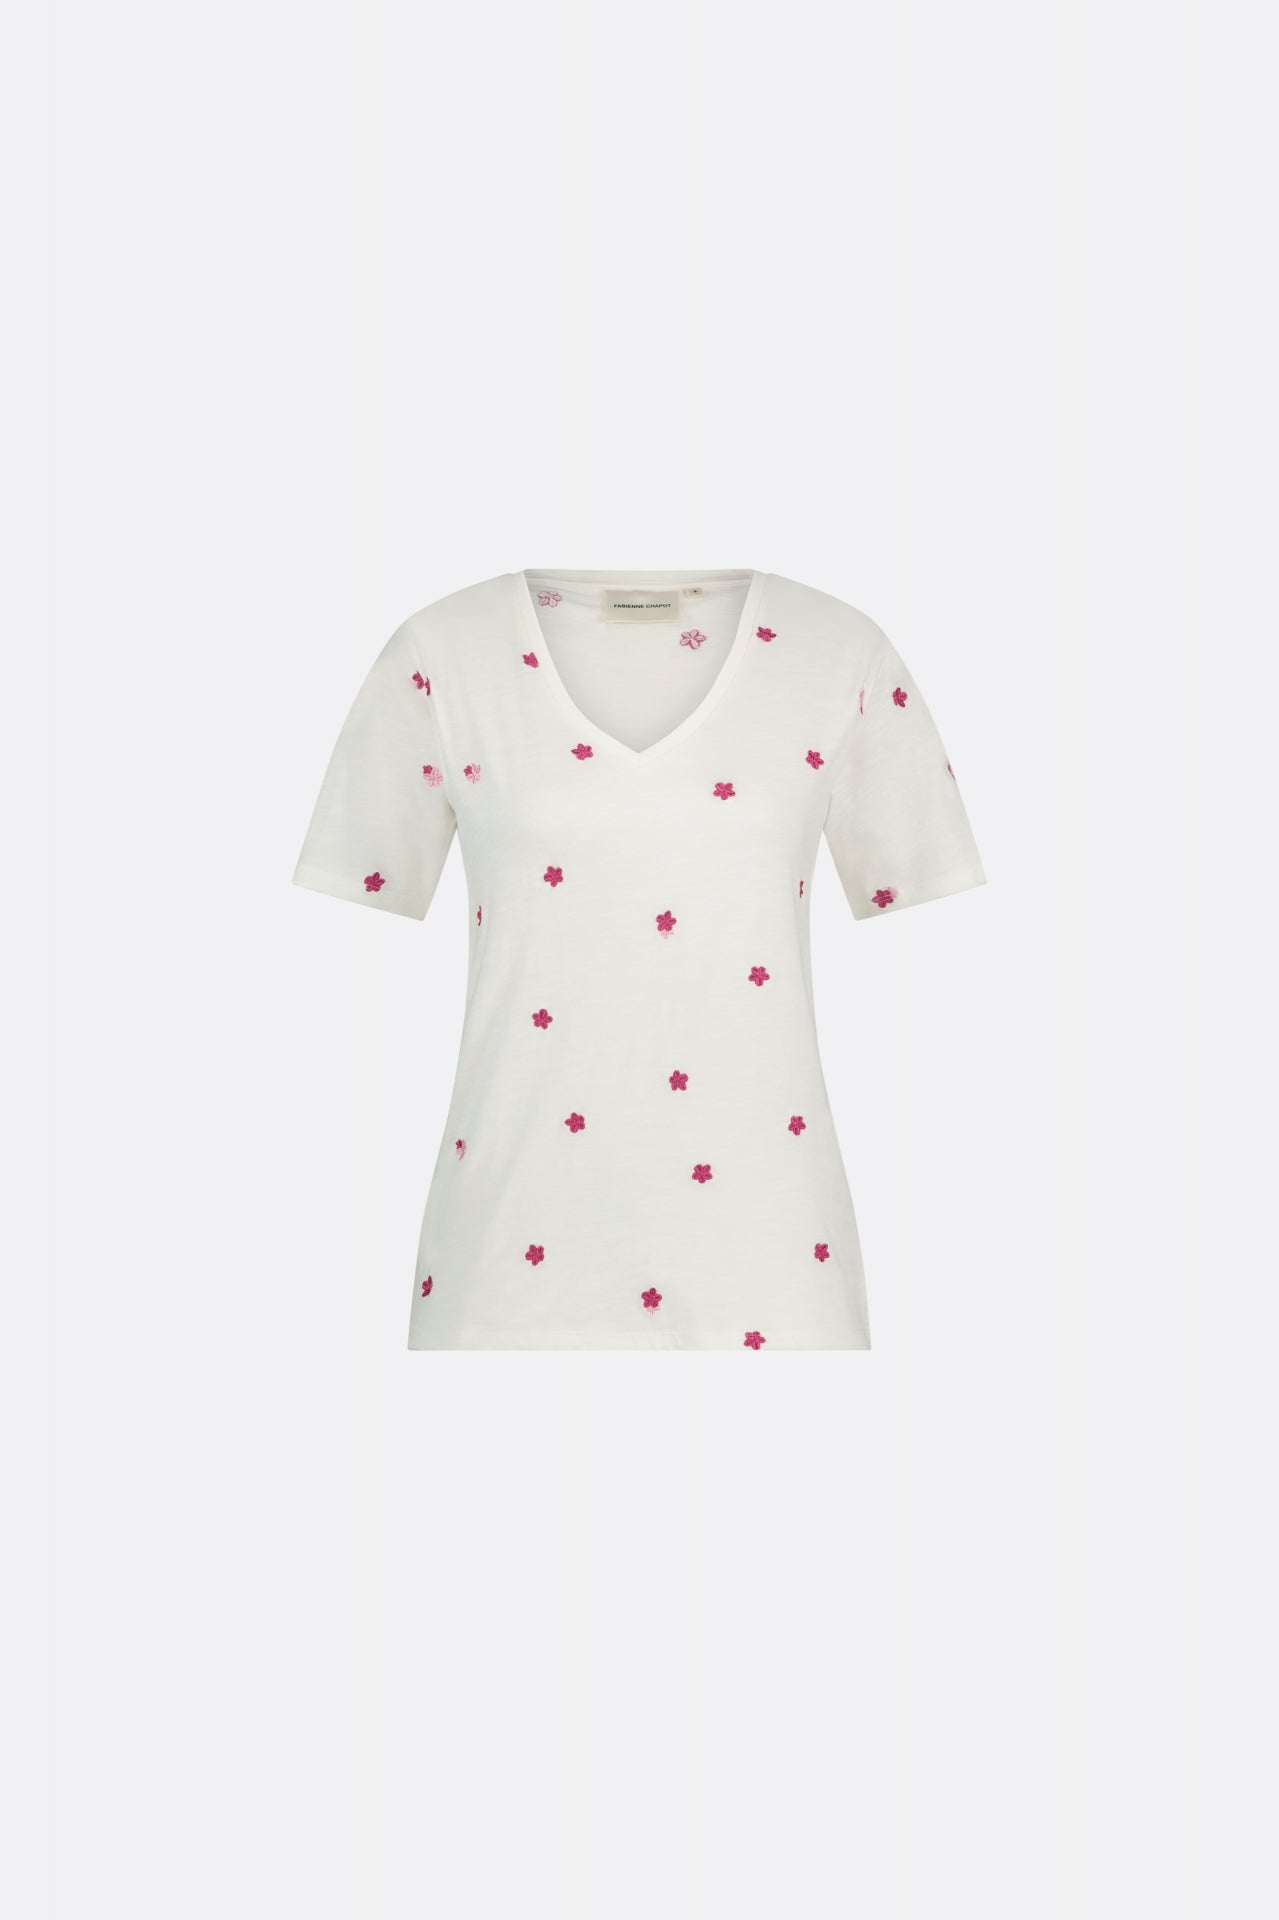 Phill V-neck Pink Flower T-shirt | Cream White/Pink